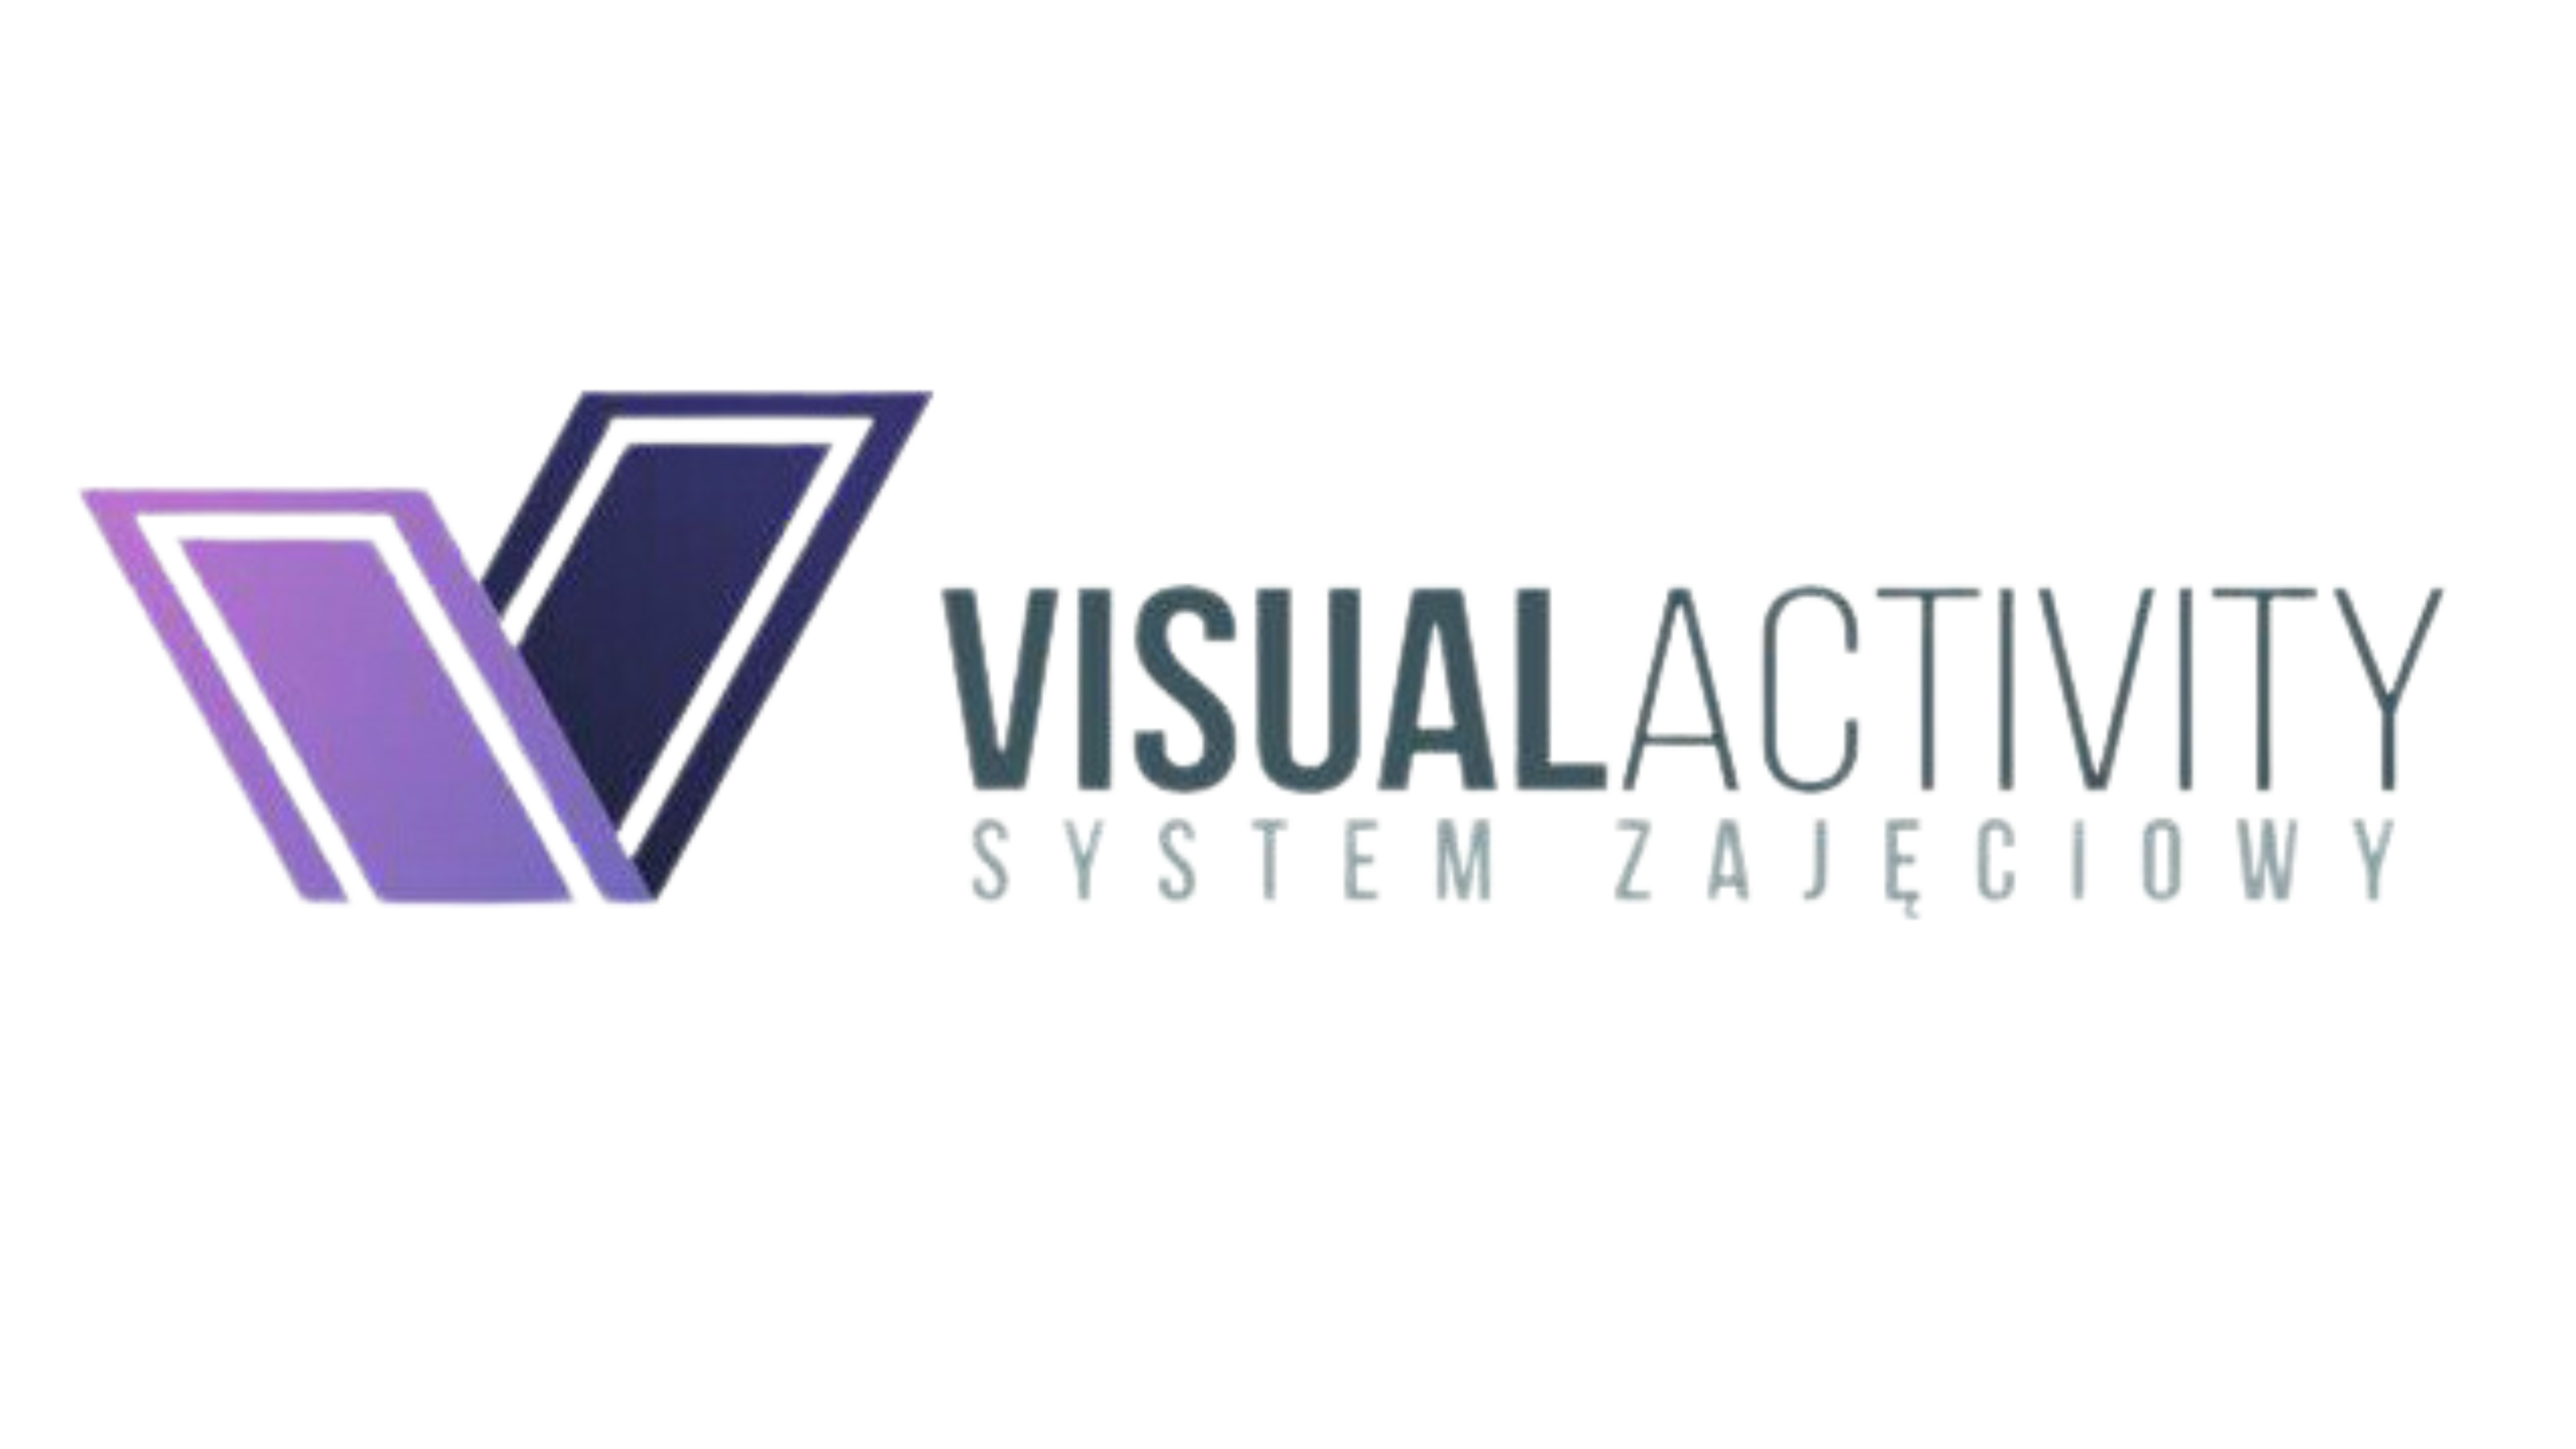 Rejestracja do nowego systemu zajęciowego - VisualActivity 